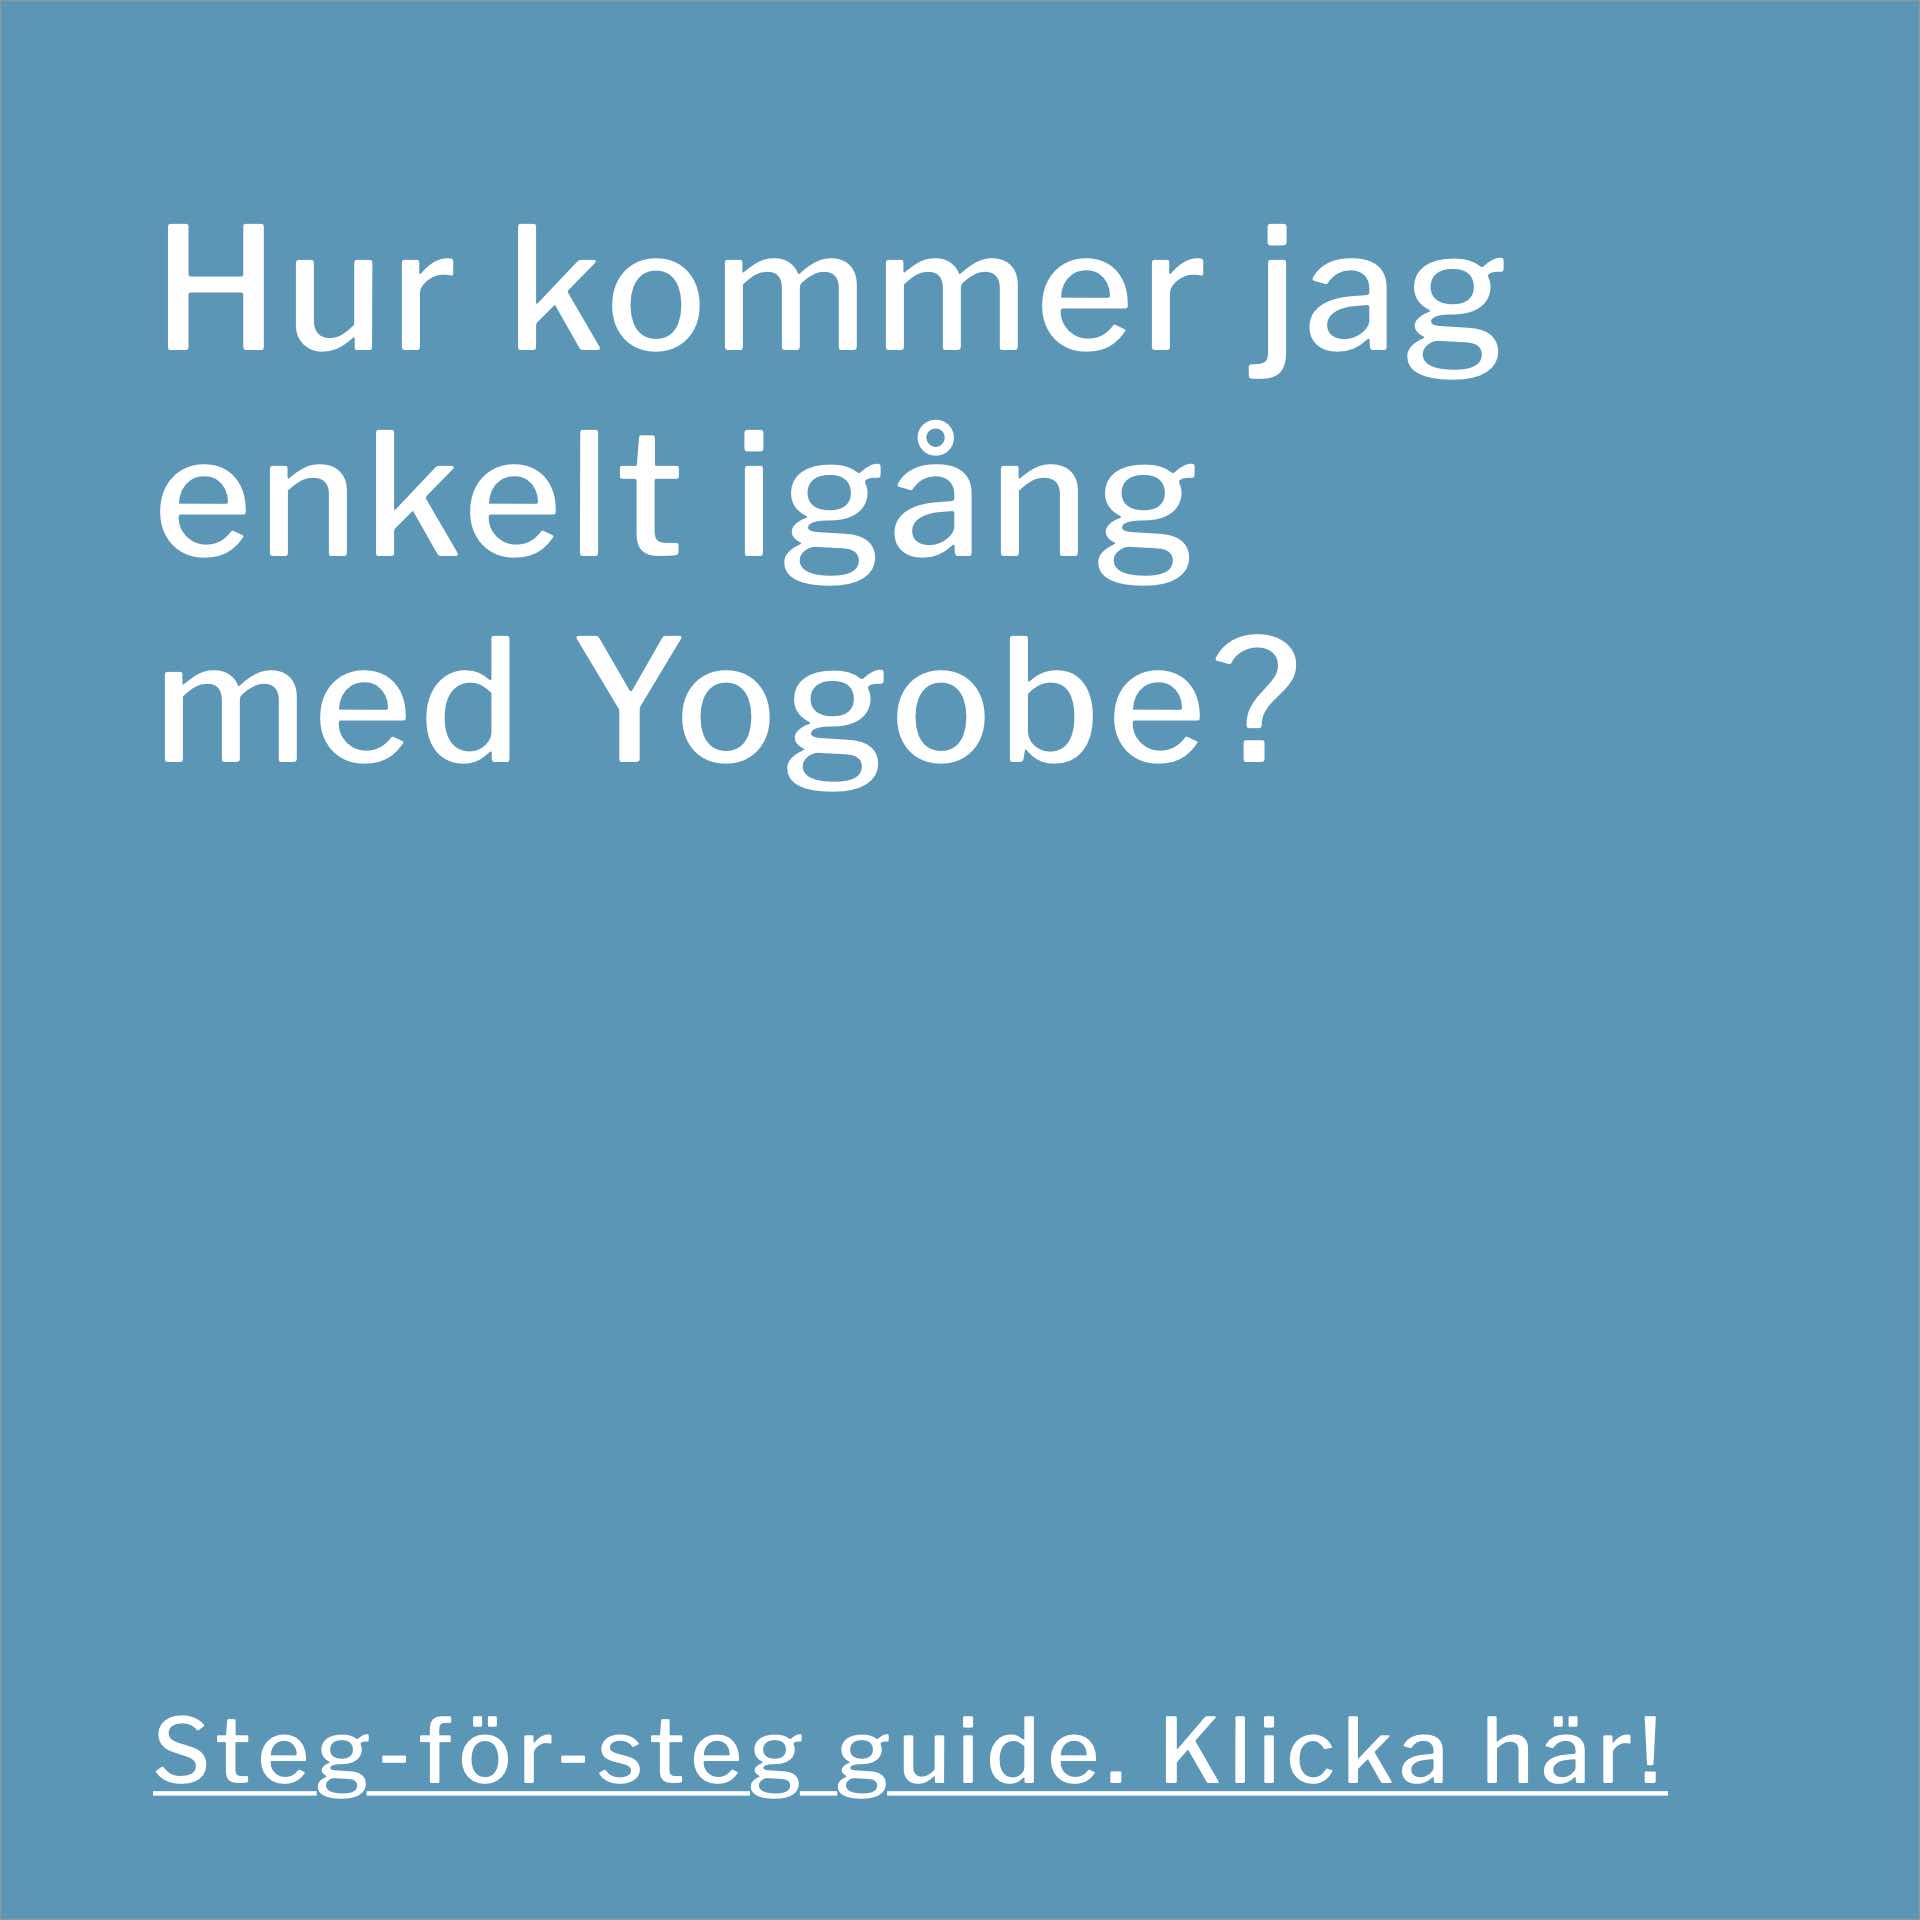 Kom lett i gang med Yogobe - for online trening hjemme.